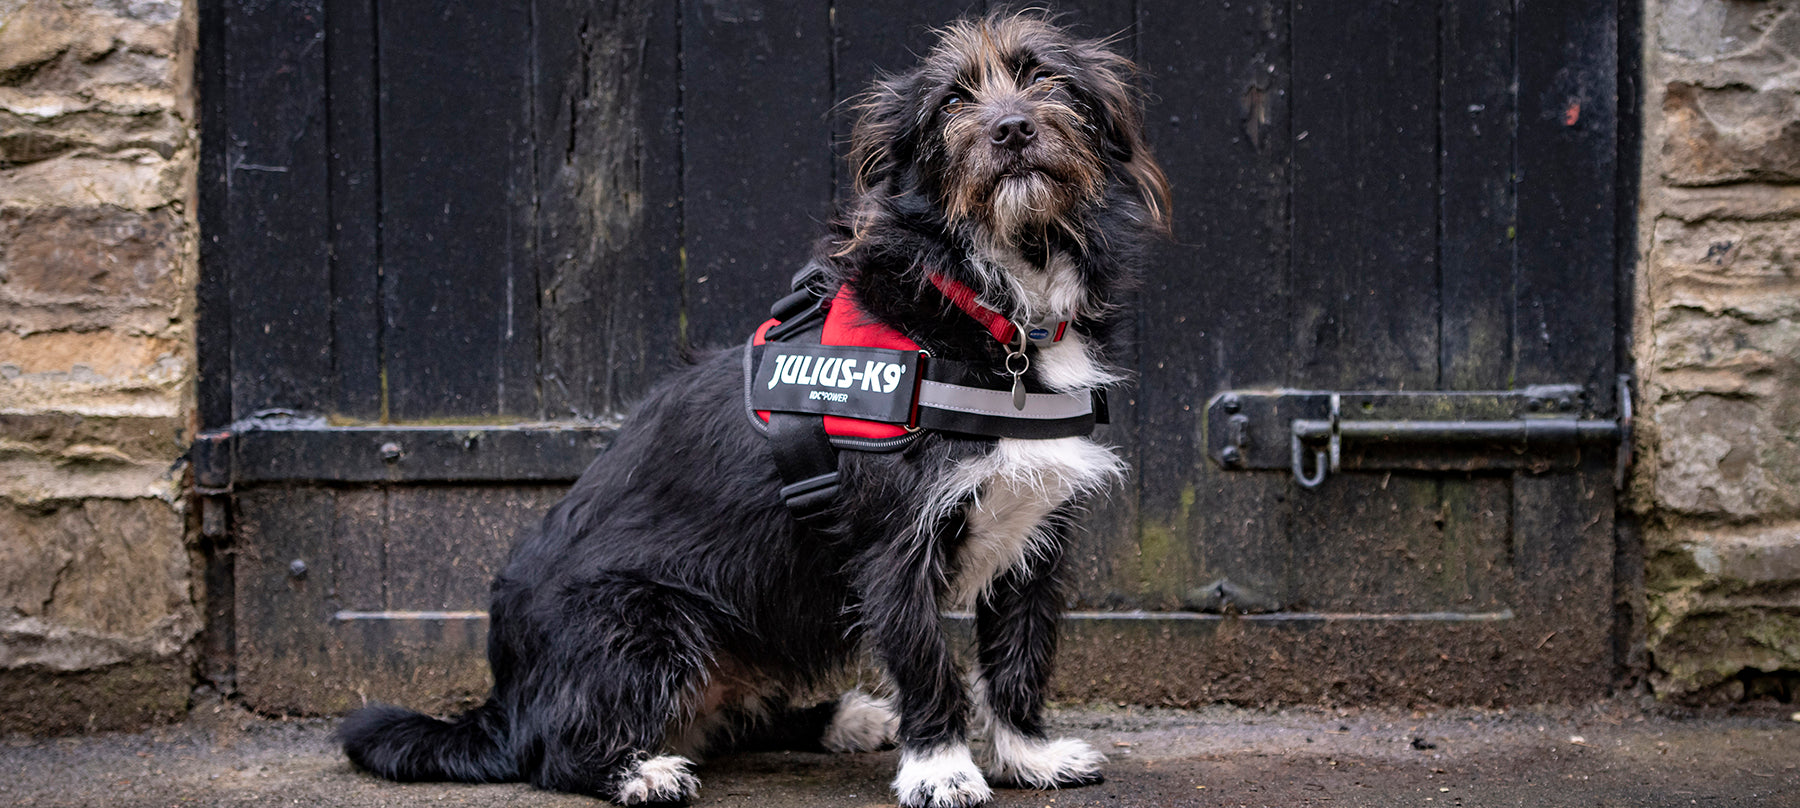 Dog wearing Julius-K9 harness